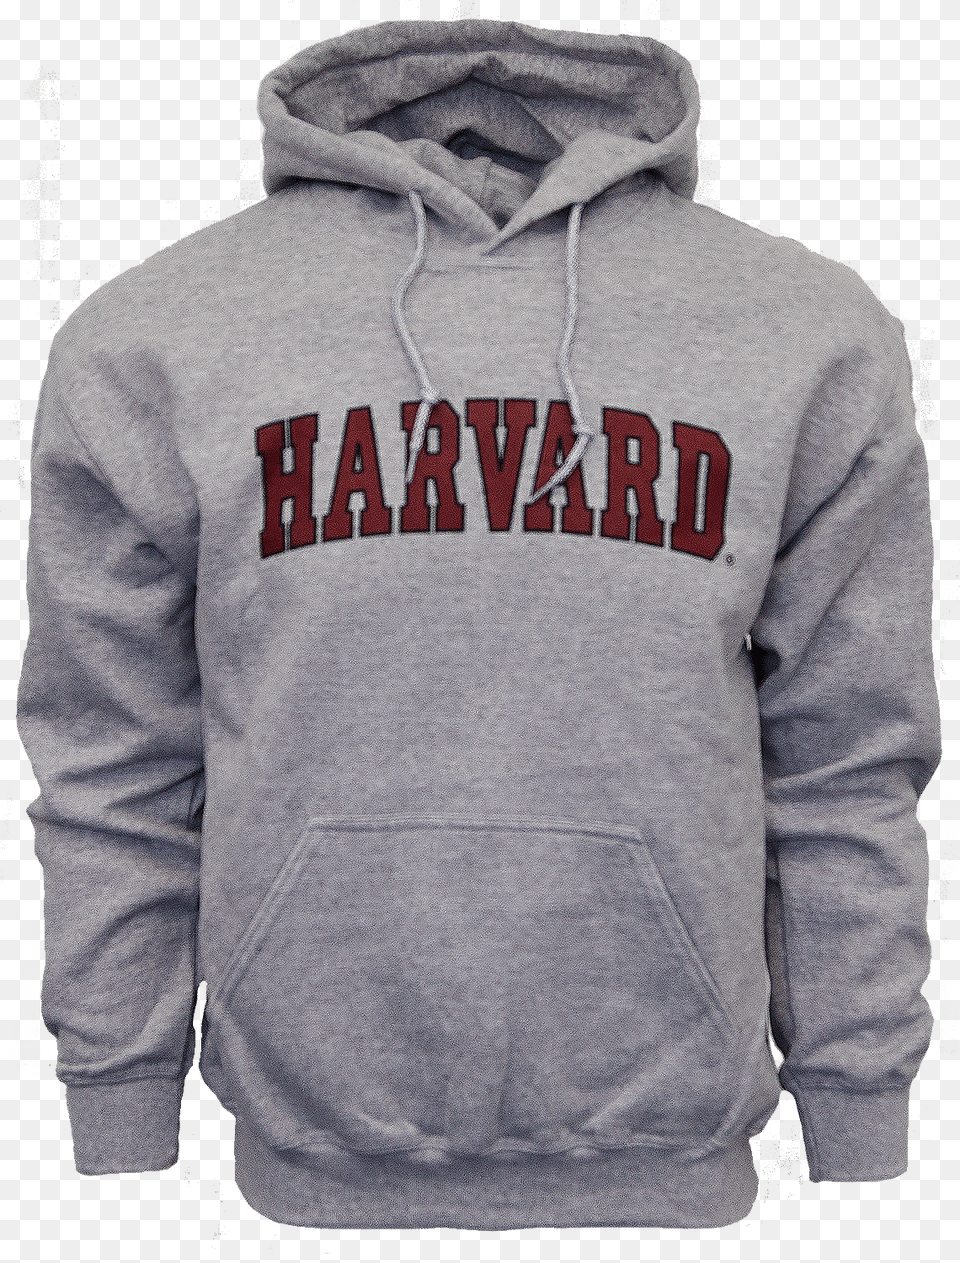 Harvard Hooded Arc Sweatshirt Hoodie, Clothing, Hood, Knitwear, Sweater Free Transparent Png